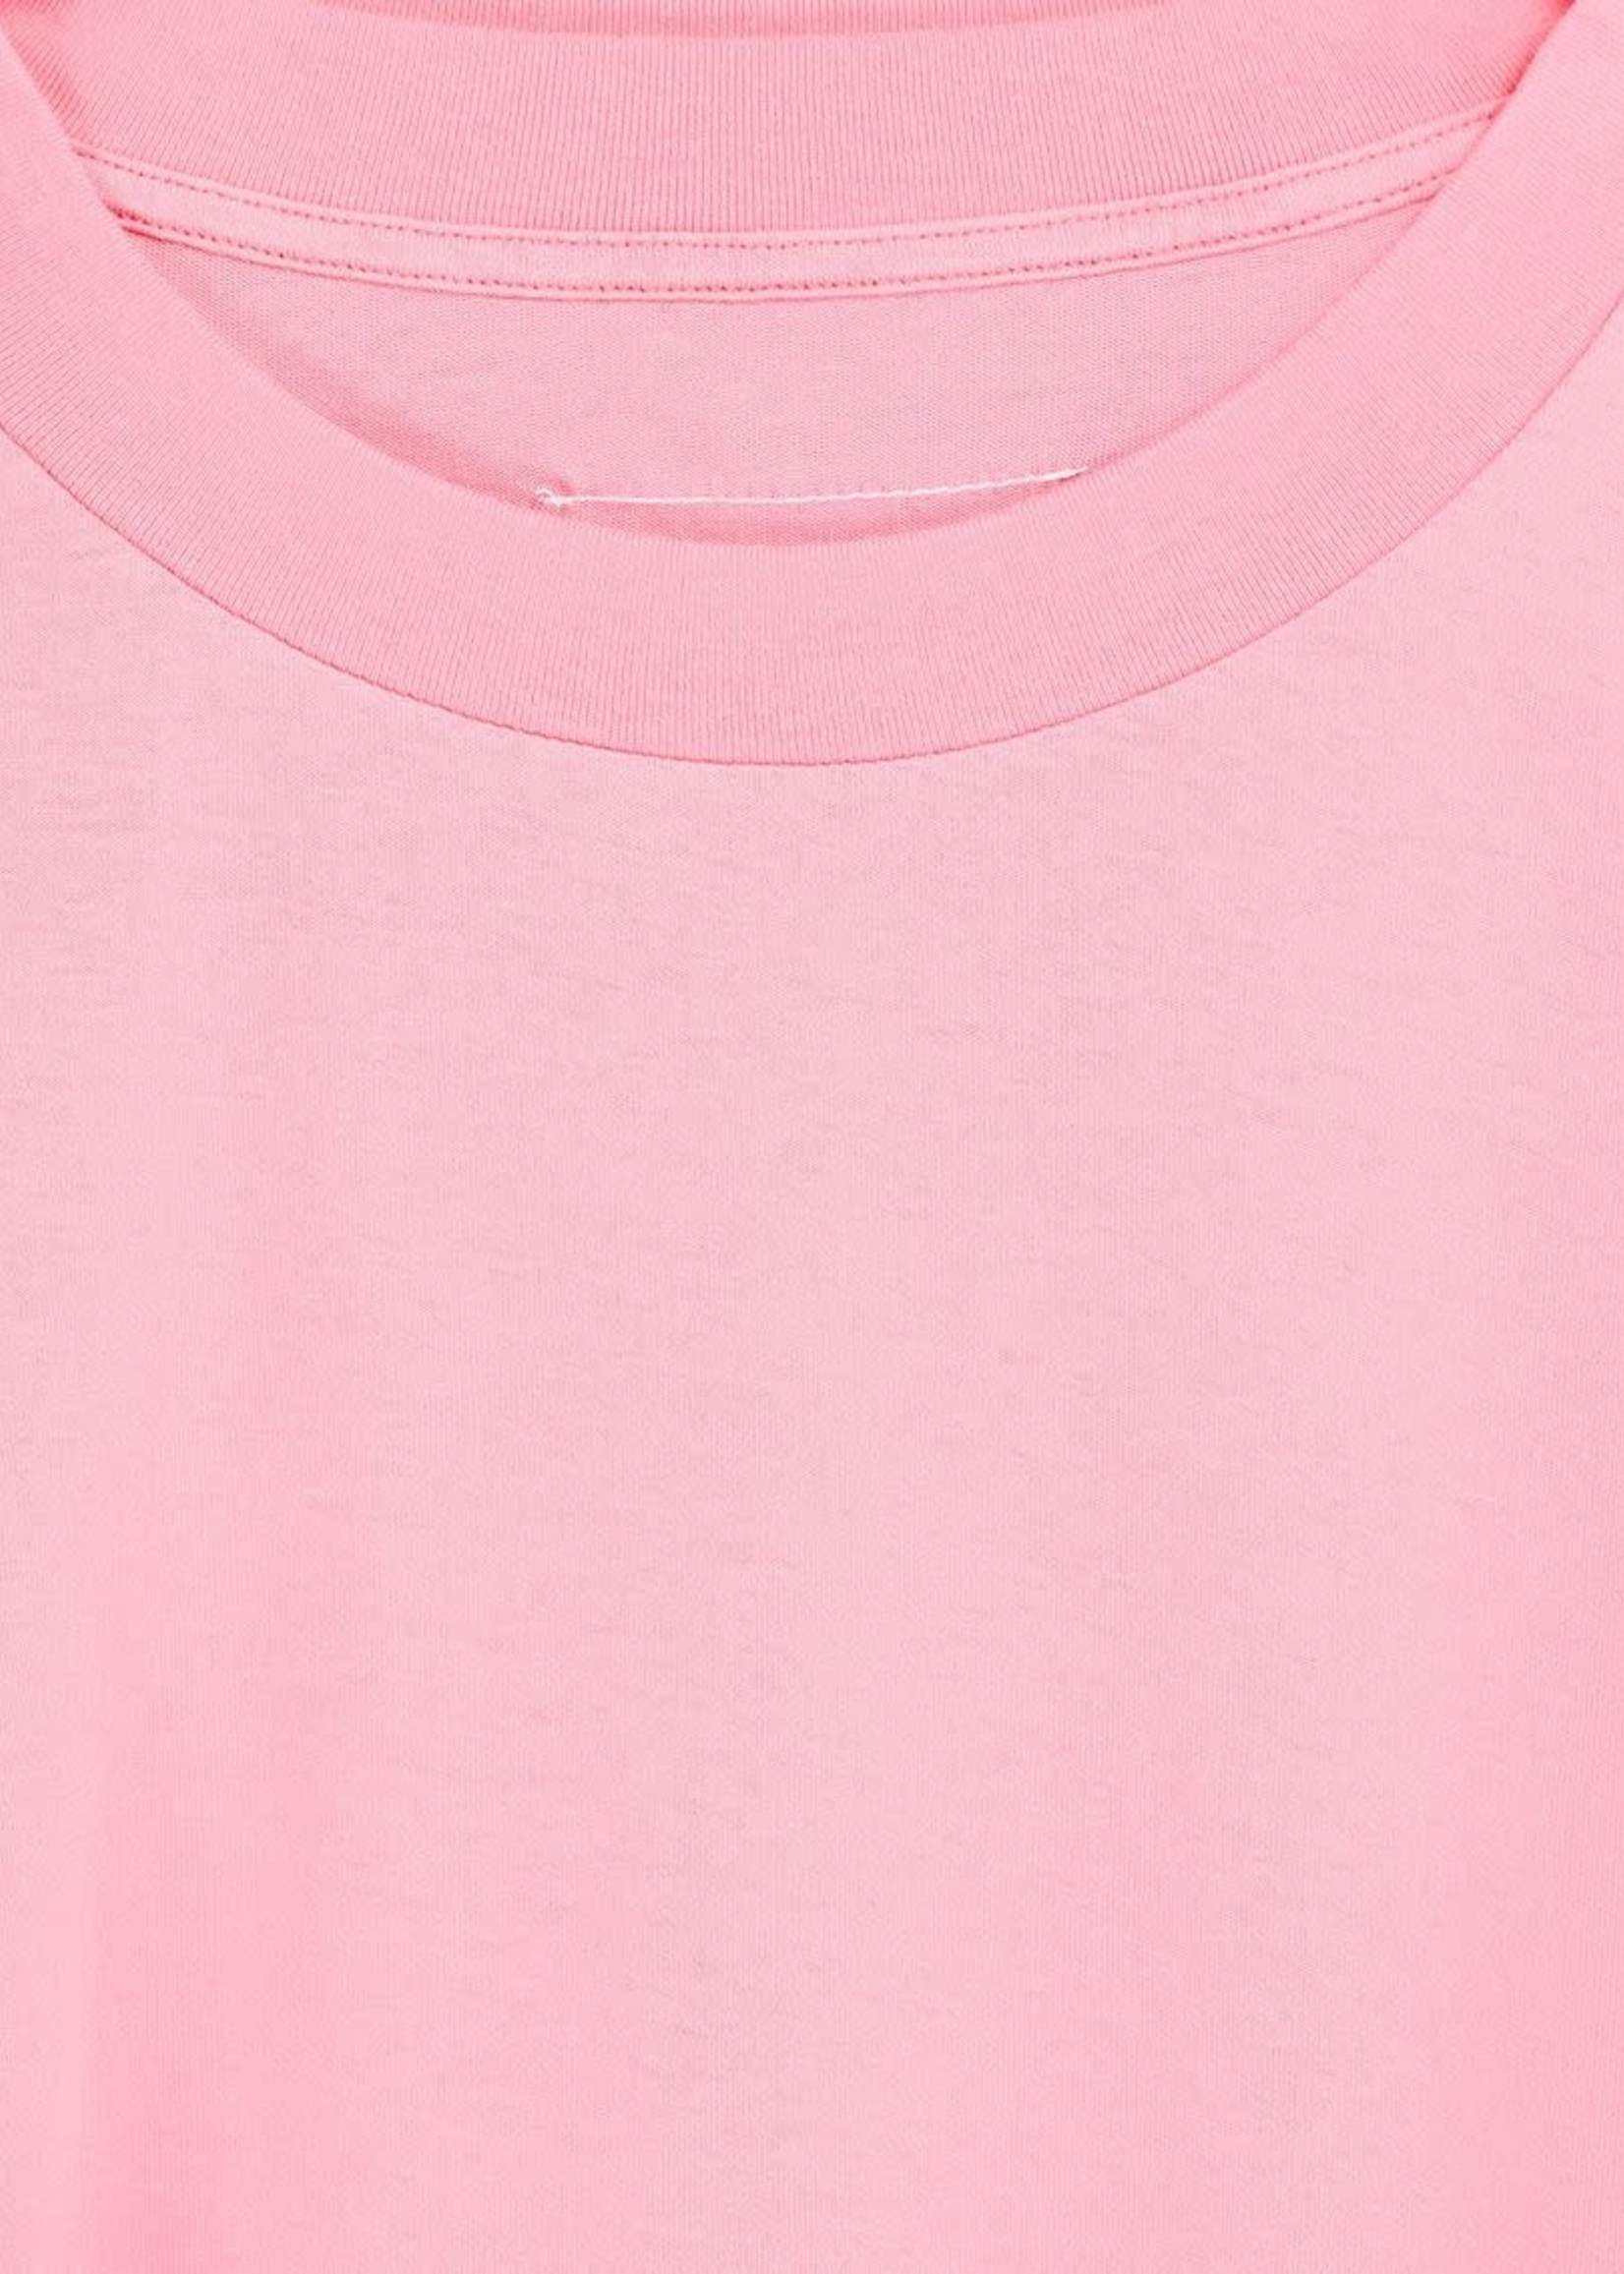 MM6 MAISON MARGIELA Neon Pink Double T-shirt